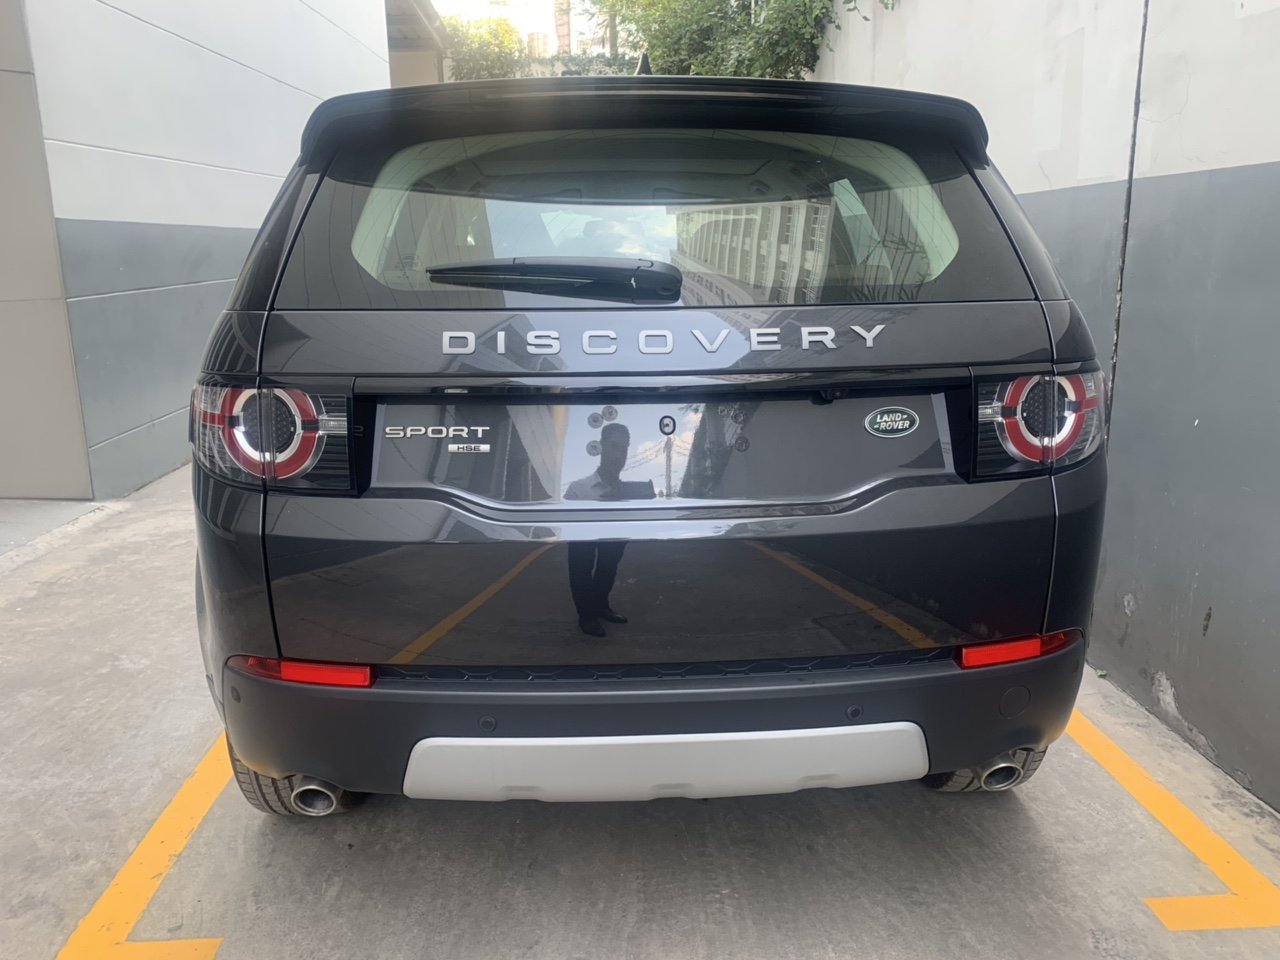 Màu xam. Xe Land Rover 7 Chỗ Discovery SPort HSE Đời Mới Nhất 2019 Bao Nhiêu Tiền, Xe 7 Chỗ Discovery SPort HSE Luxury Màu Xanh Đen Đời Mới Nhất Giá rẻ nhất 3.499 triệu đồng tại việt nam